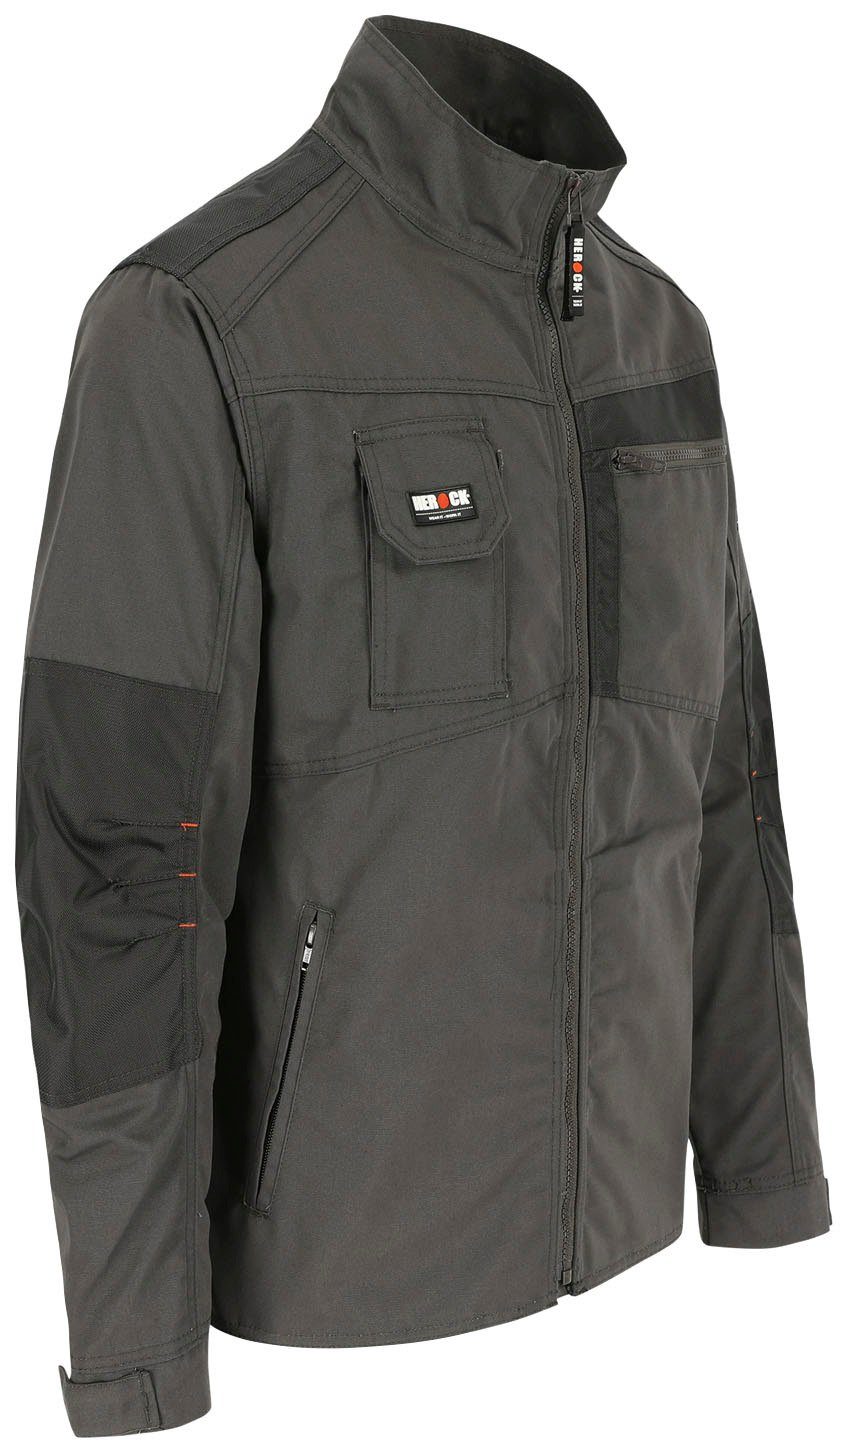 Herock Arbeitsjacke Taschen - verstellbare Anzar grau Wasserabweisend - Bündchen Jacke - robust 7